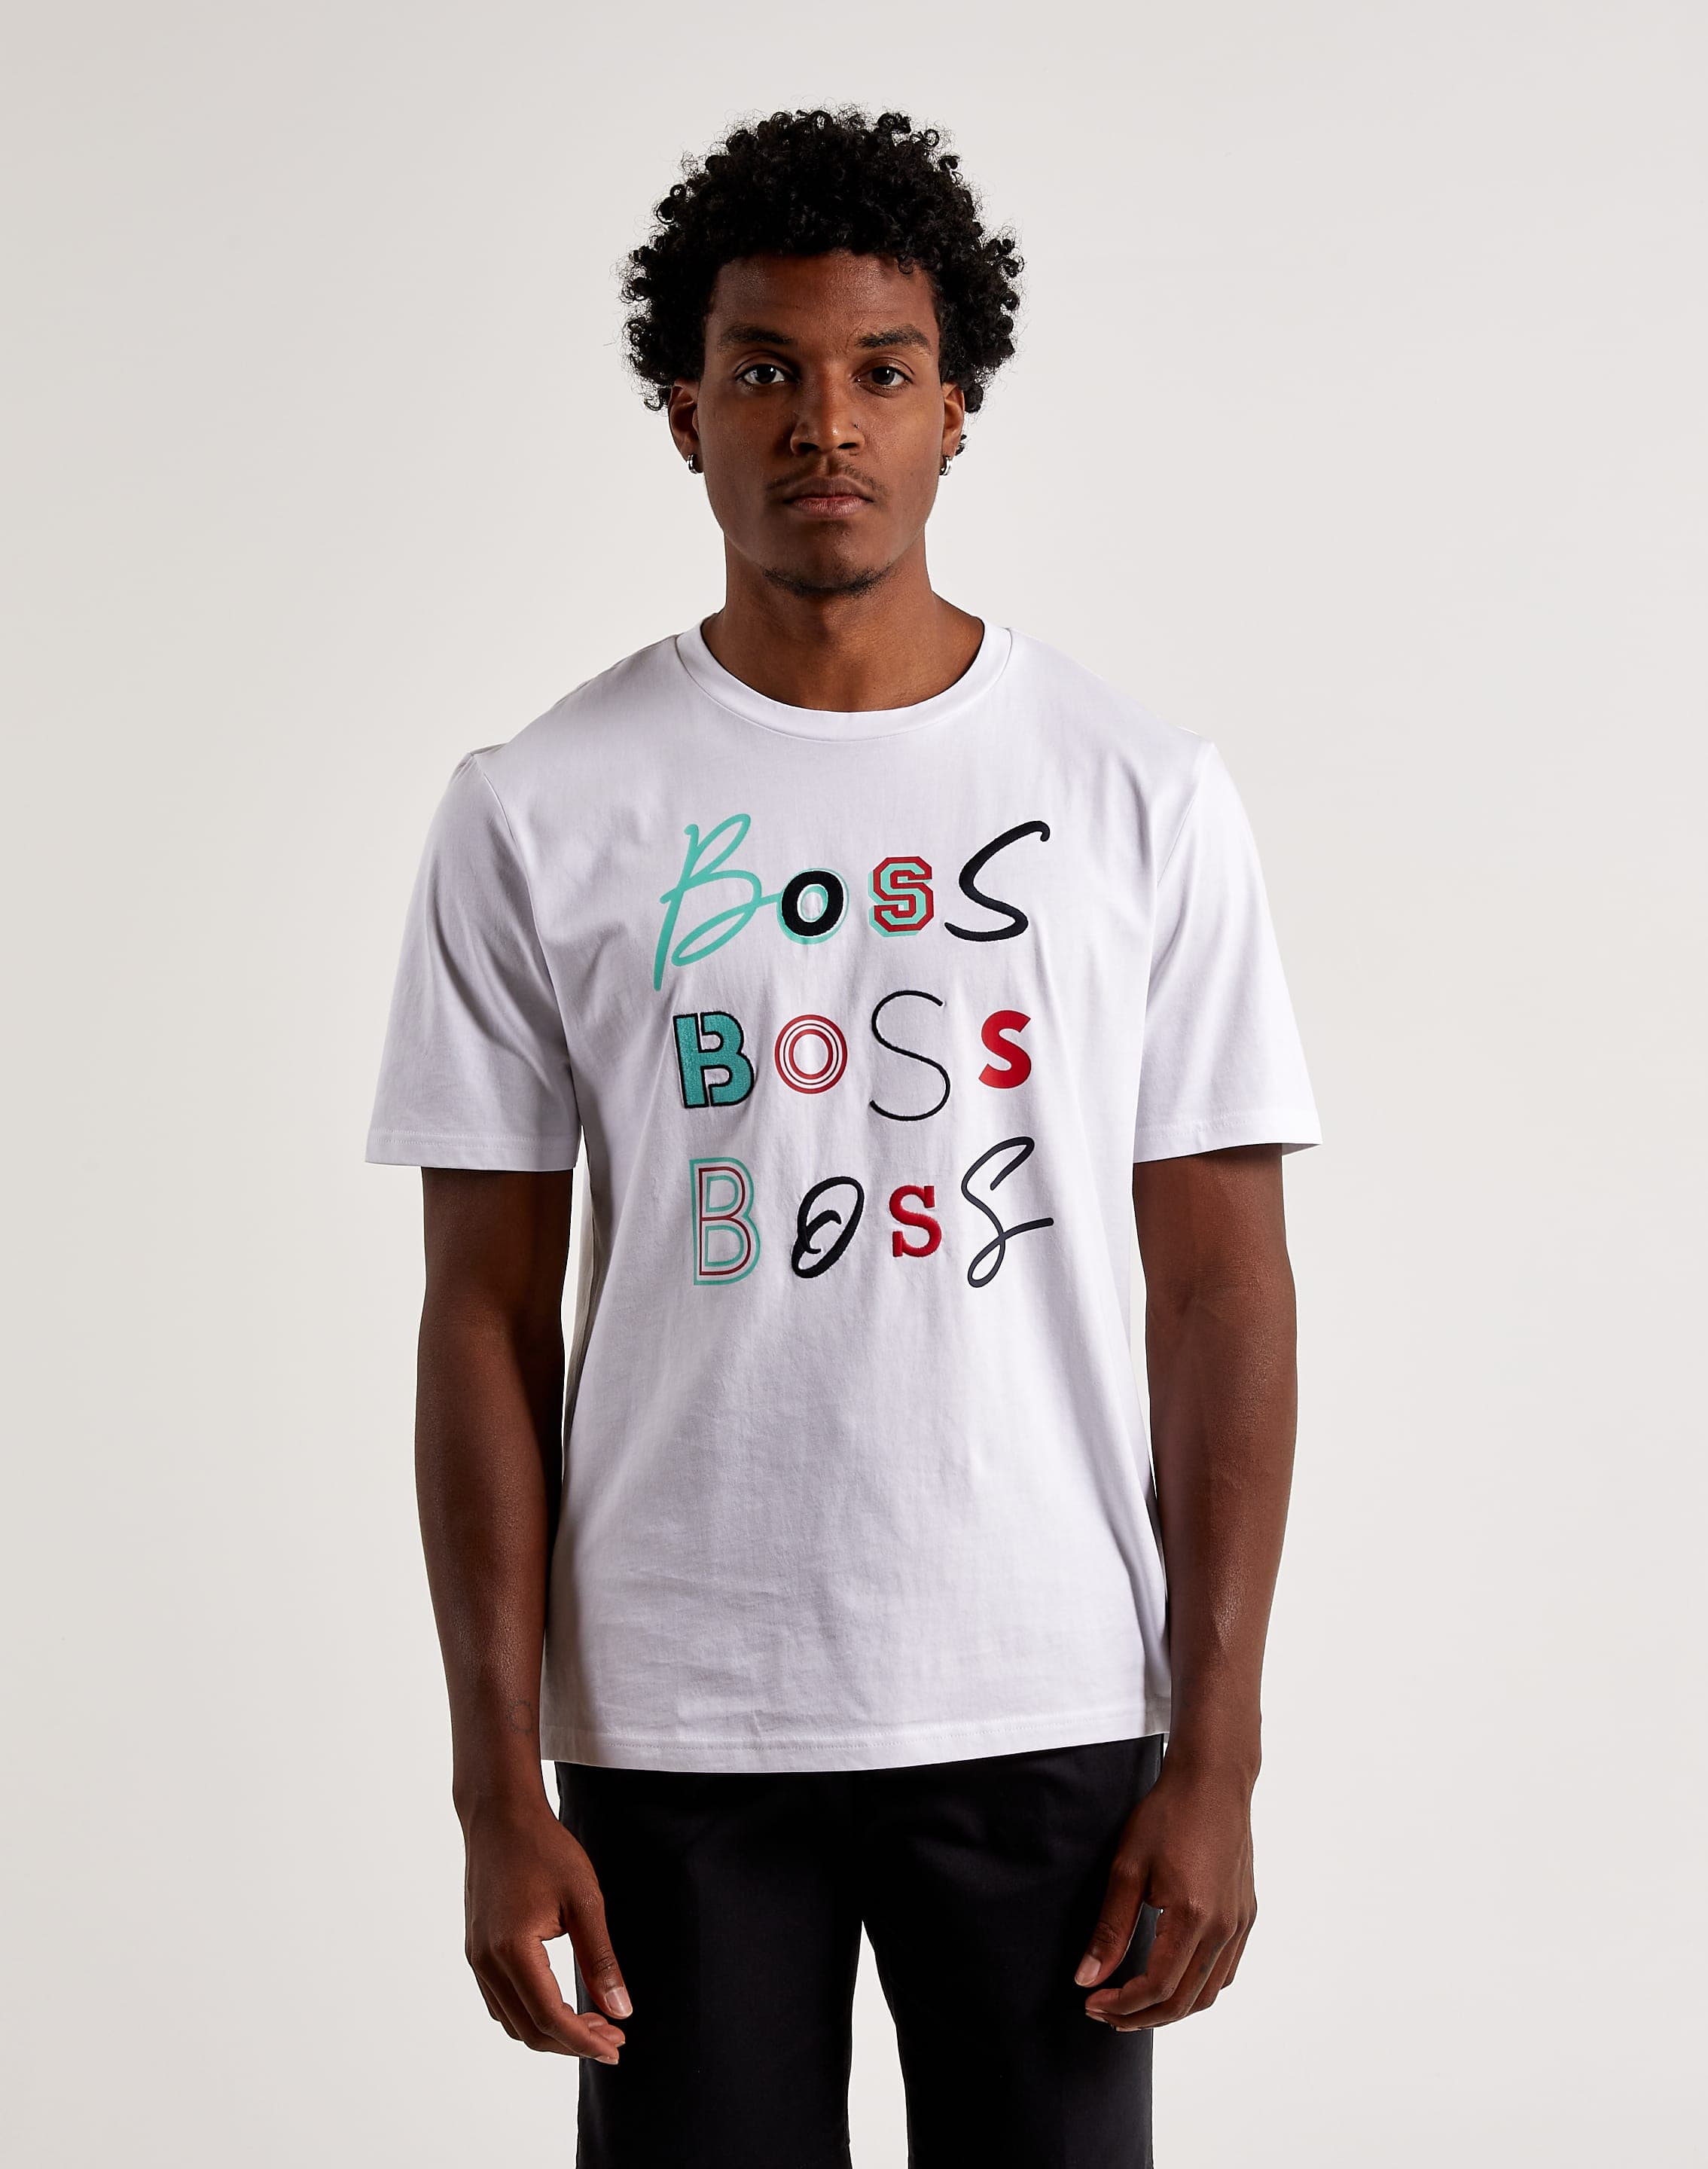 Boss Boss Logo Fun Tee – DTLR